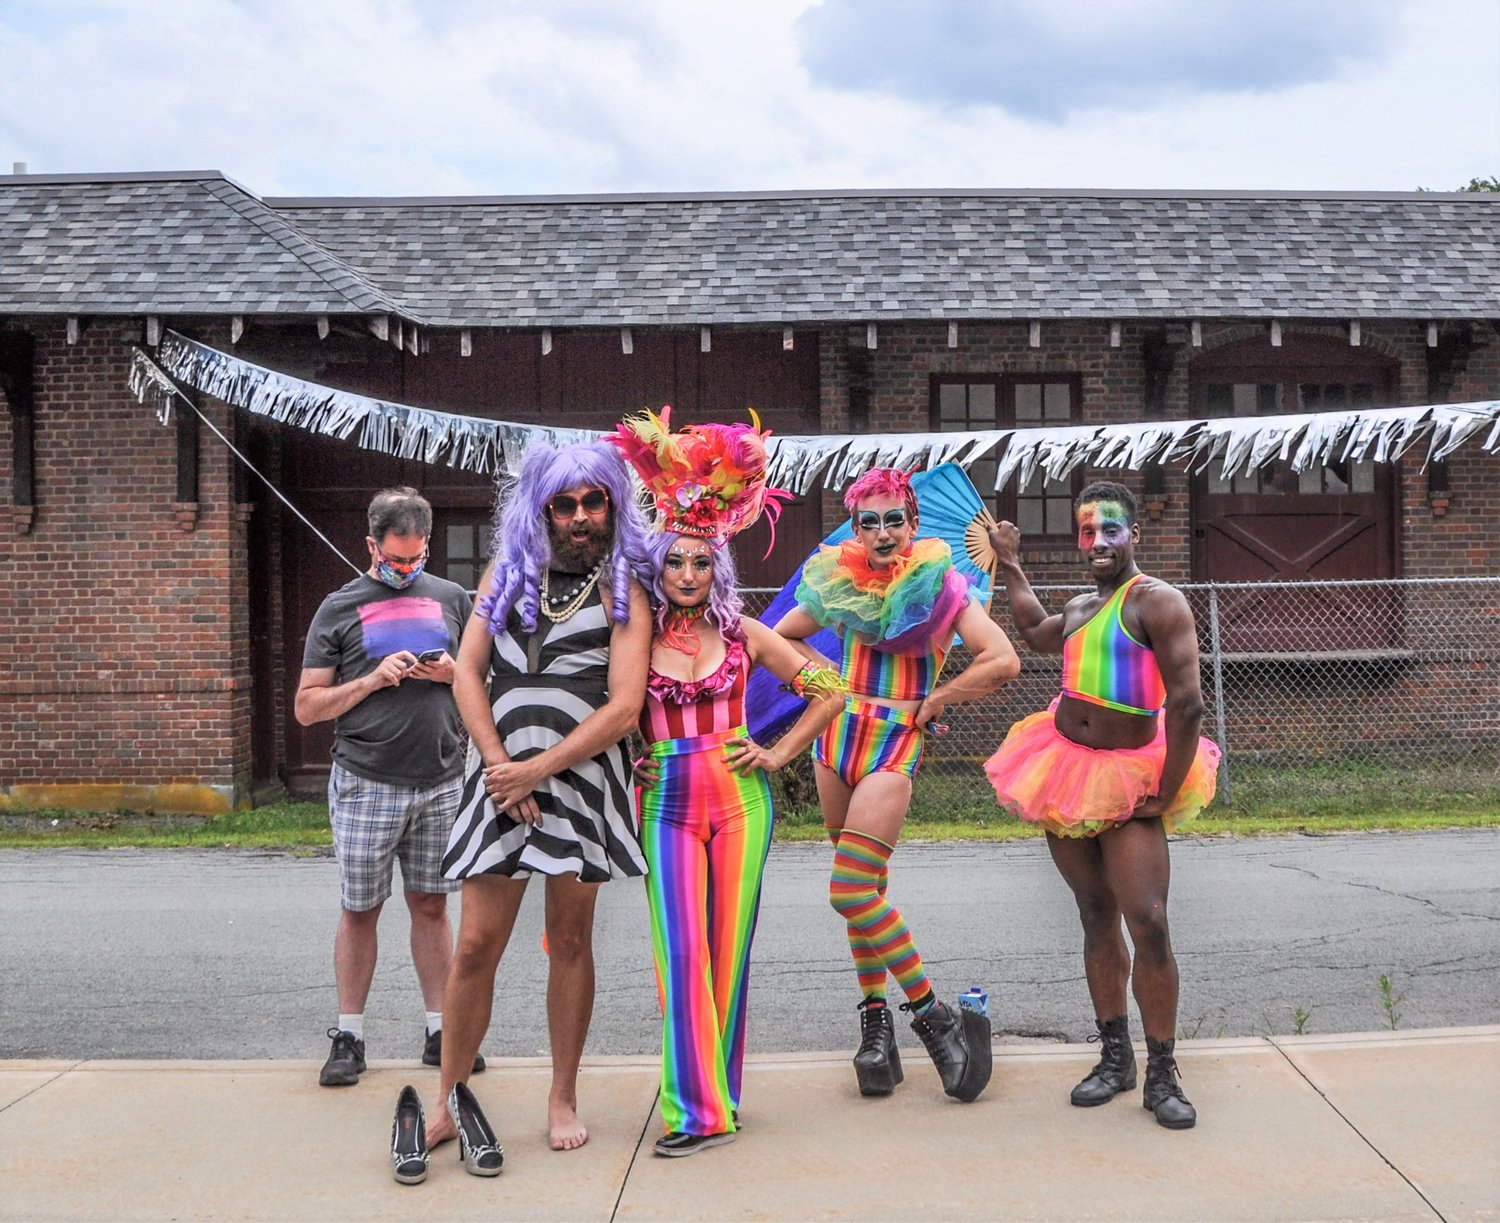 Dressed in colorful drag at Hurleyville Pride last Saturday...